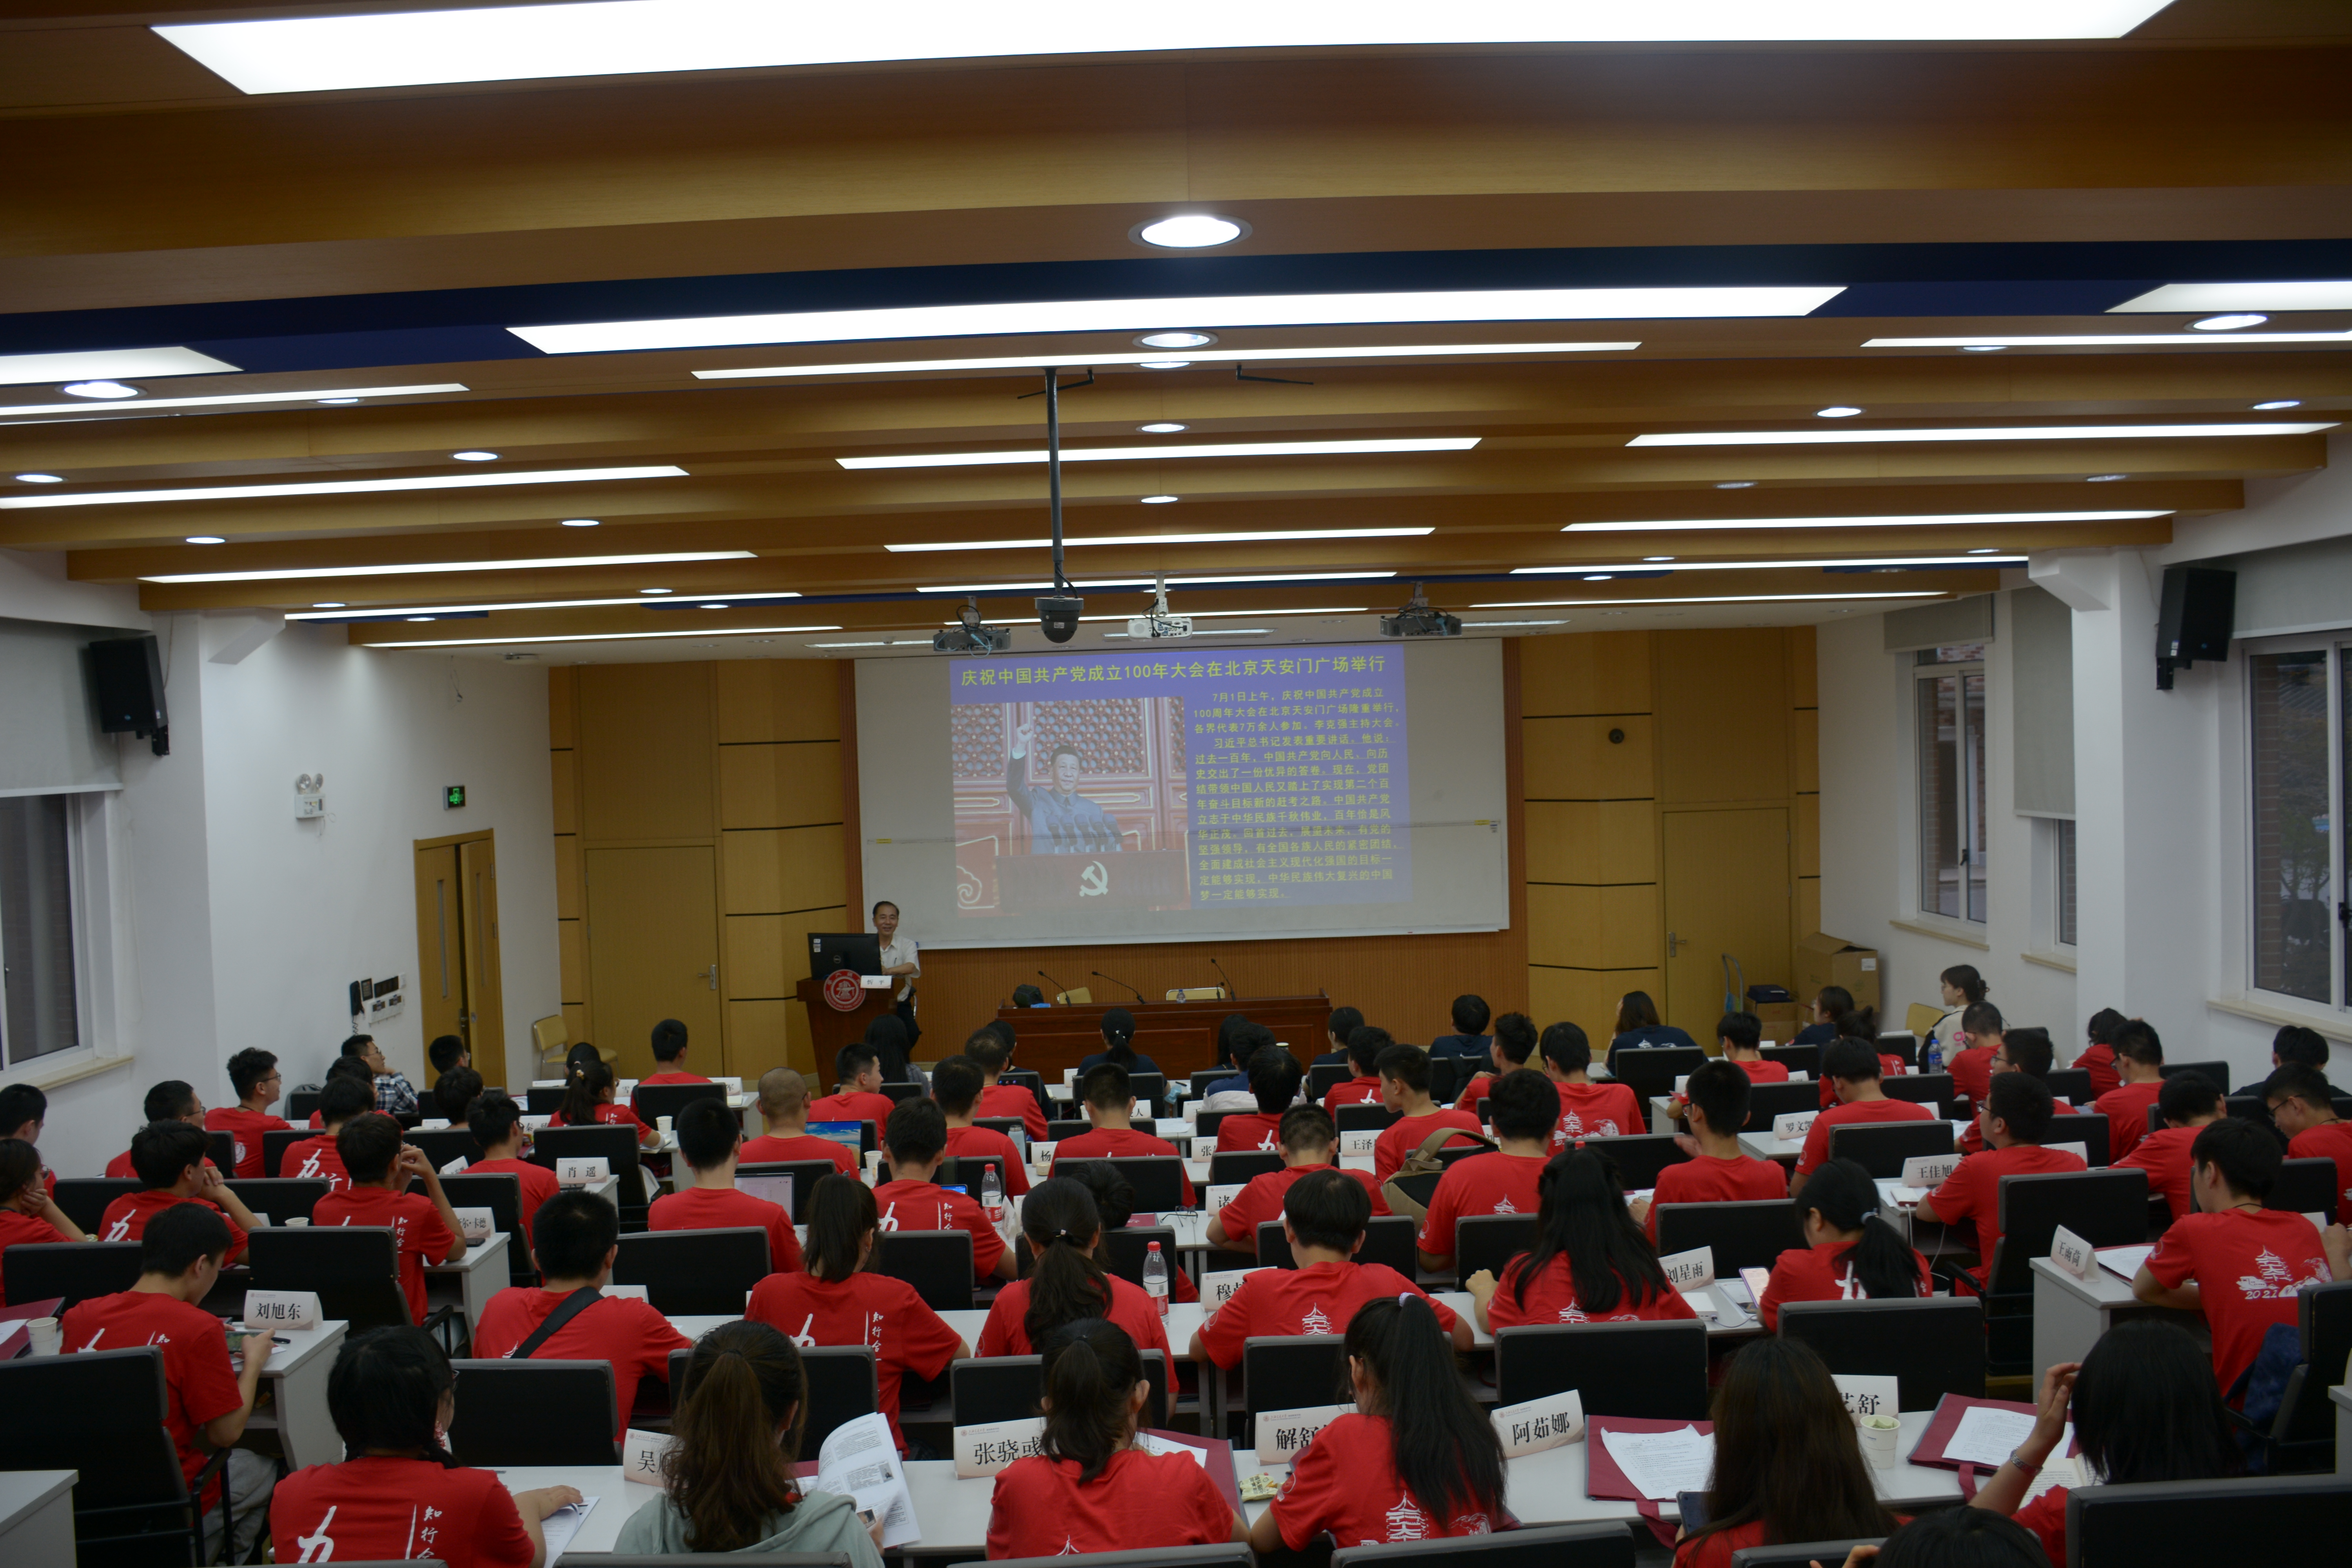 北京大学公共卫生学院访百年初心,筑青春梦想思政实践顺利开展